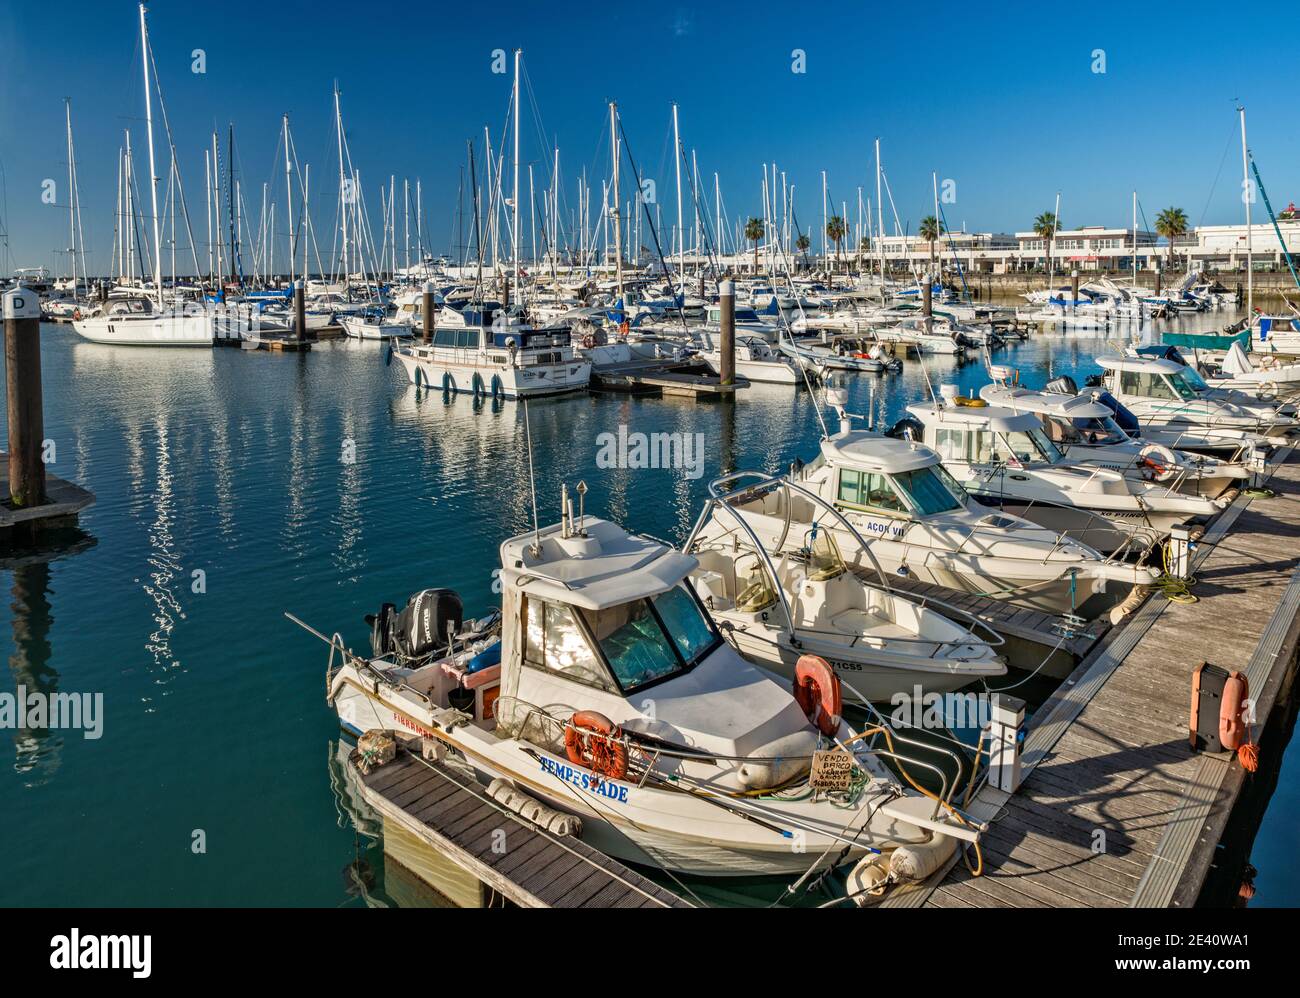 Boats at marina, in Cascais, Lisbon District, Lisboa region, Portugal Stock Photo